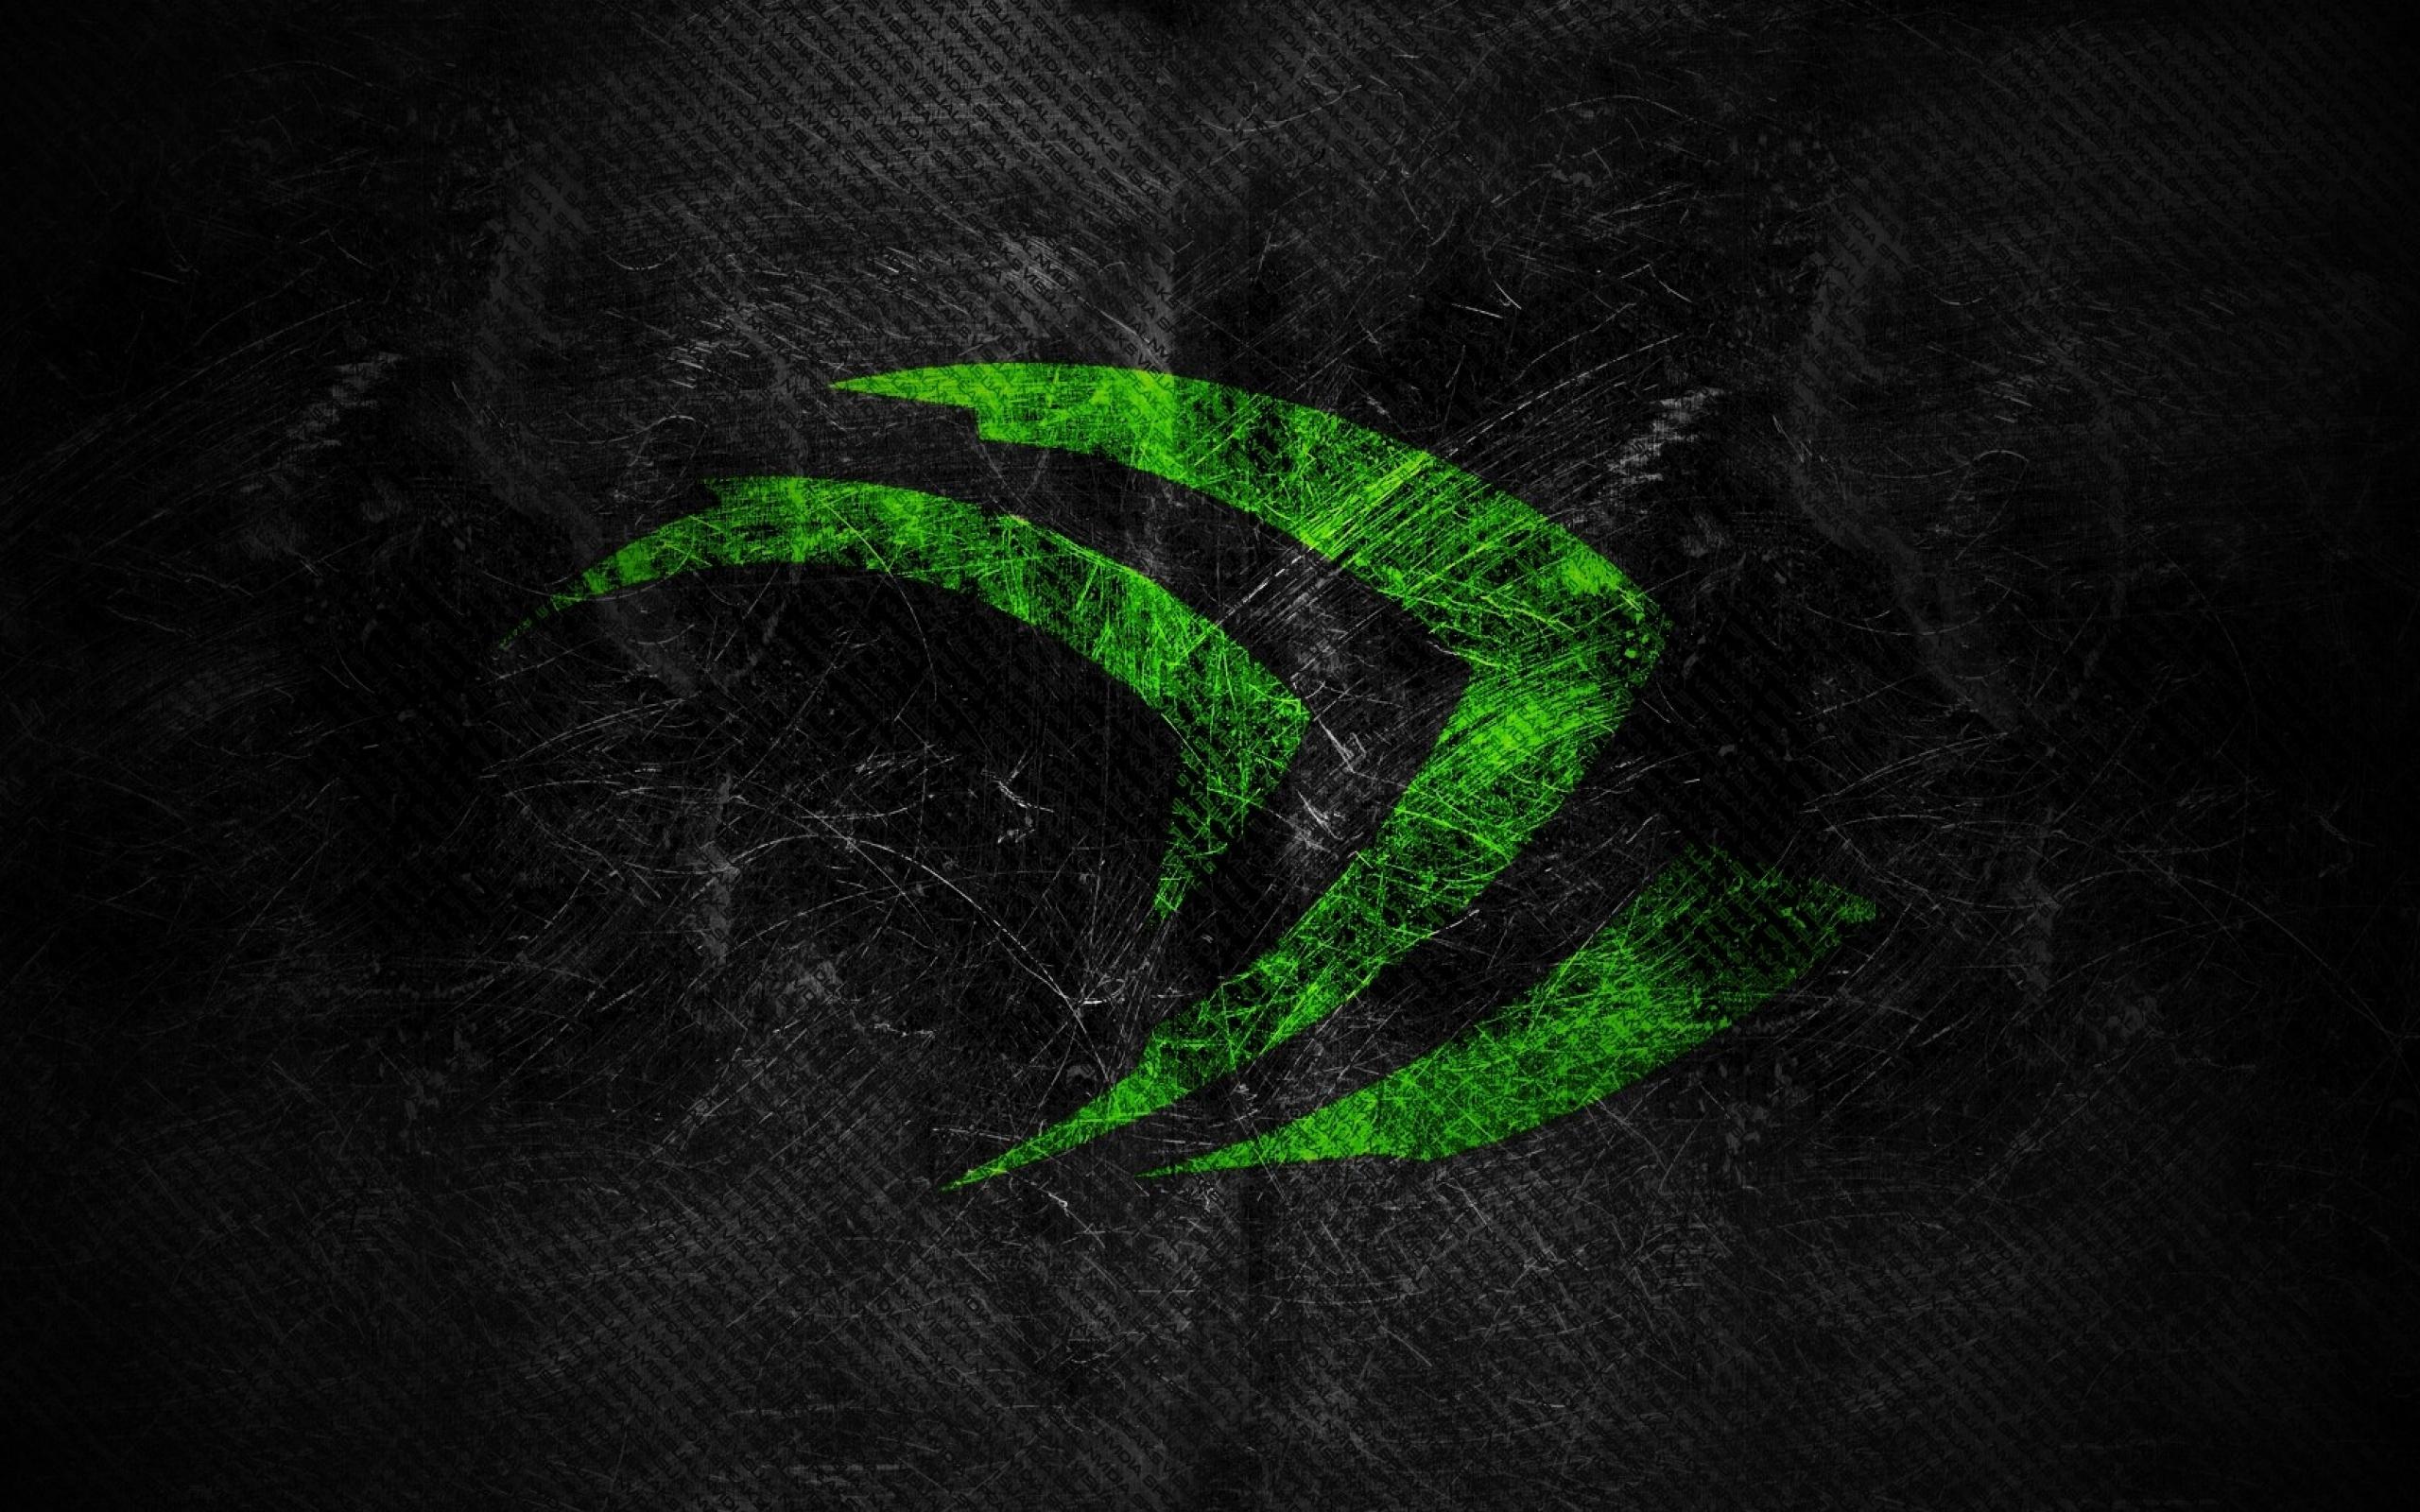 Nvidia Shield Logo